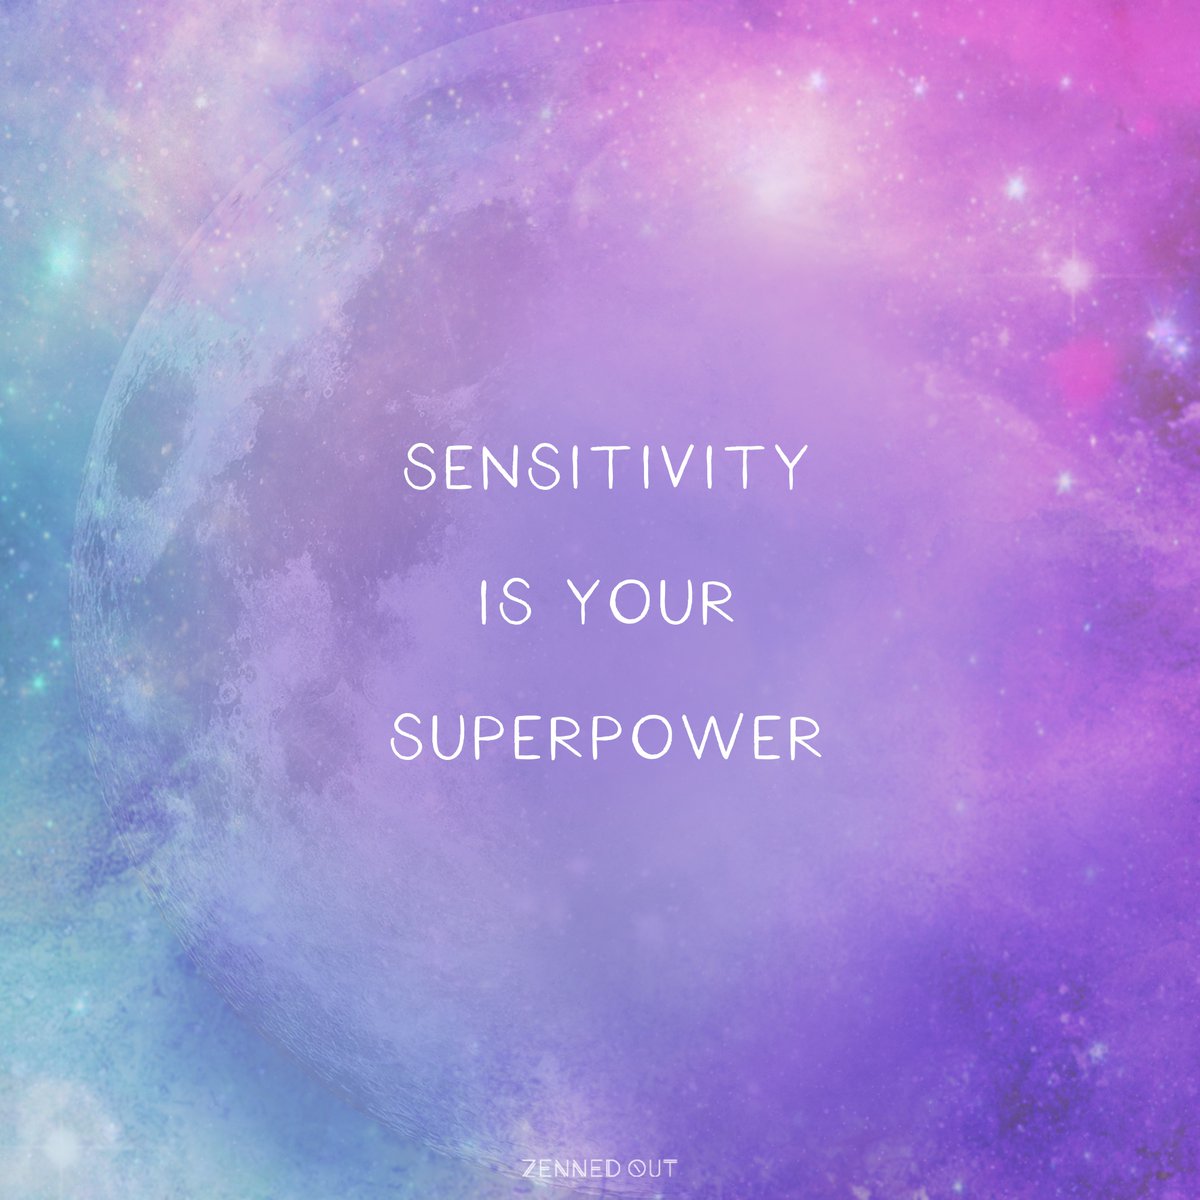 Sensitivity is Your Superpower – Paul DeBlassie III, Ph.D.